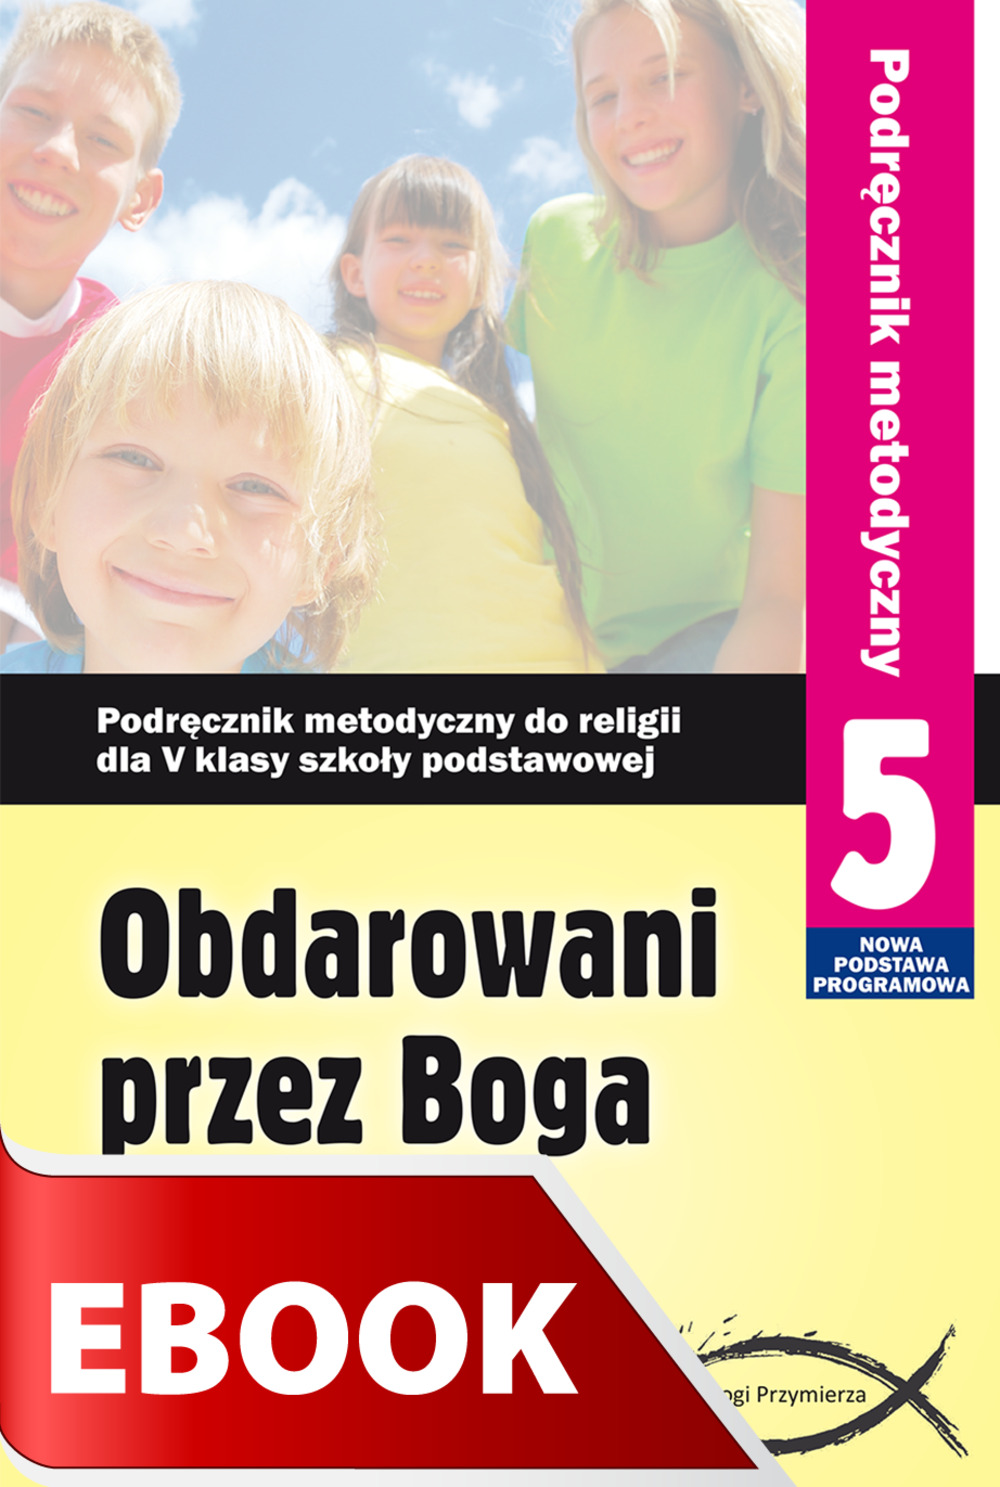 Obdarowani przez Boga | wydawnictwowam.pl